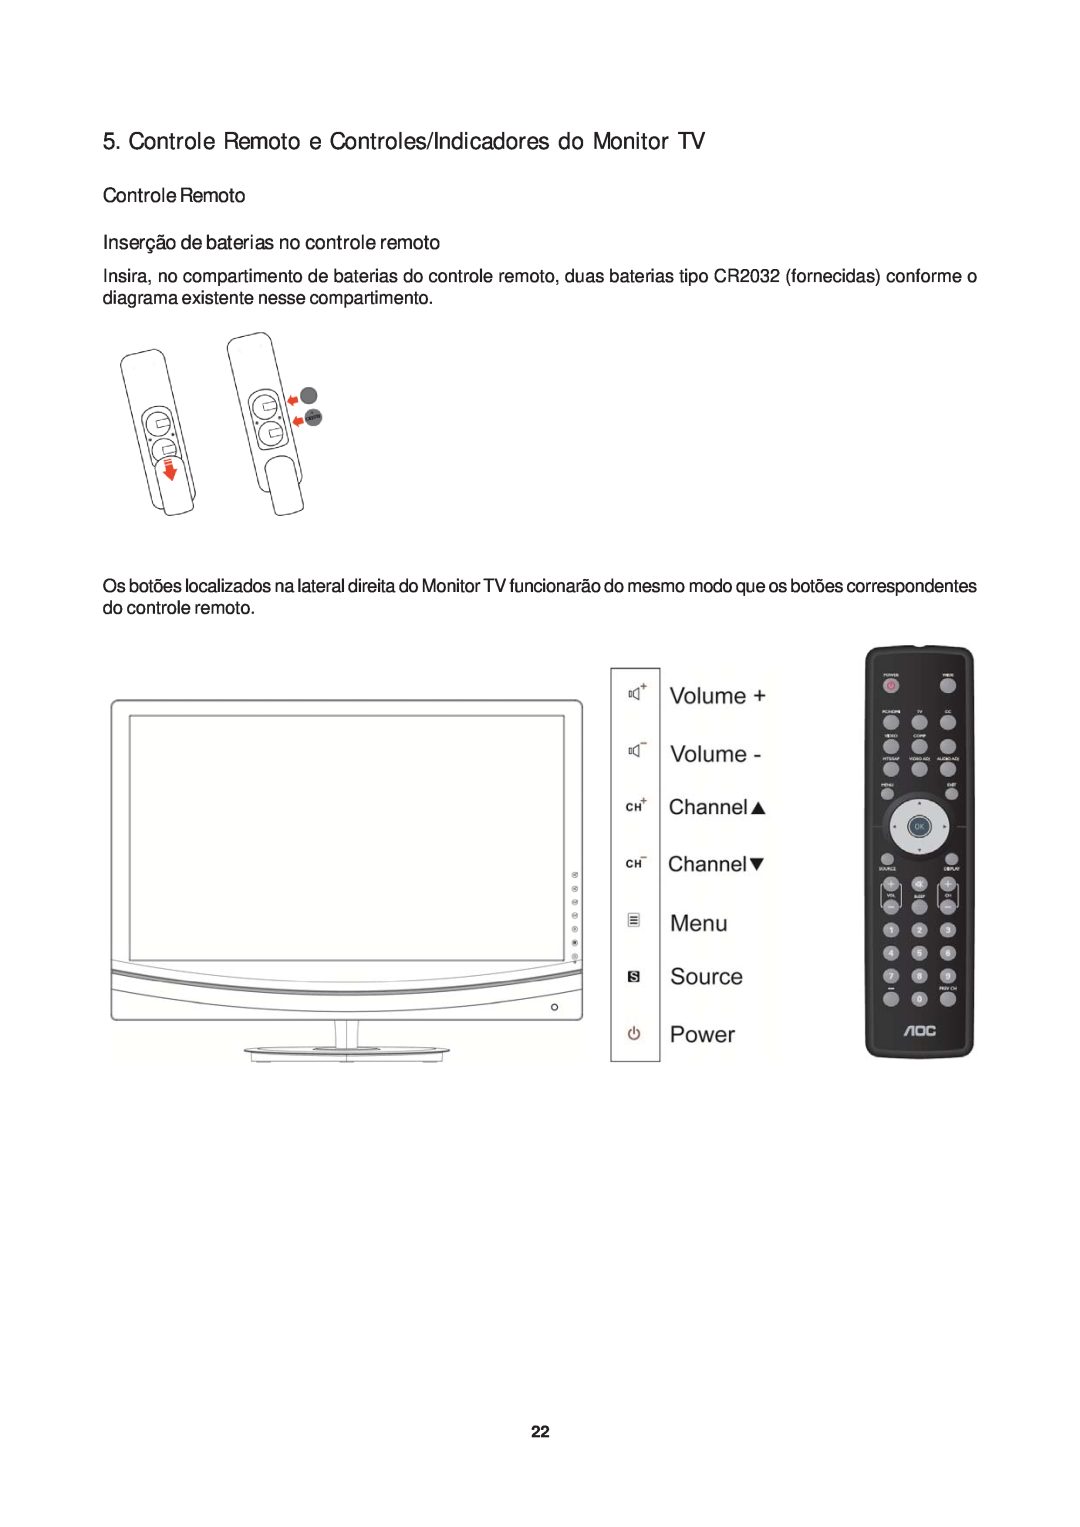 AOC T942WE Controle Remoto e Controles/Indicadores do Monitor TV, Controle Remoto Inserção de baterias no controle remoto 